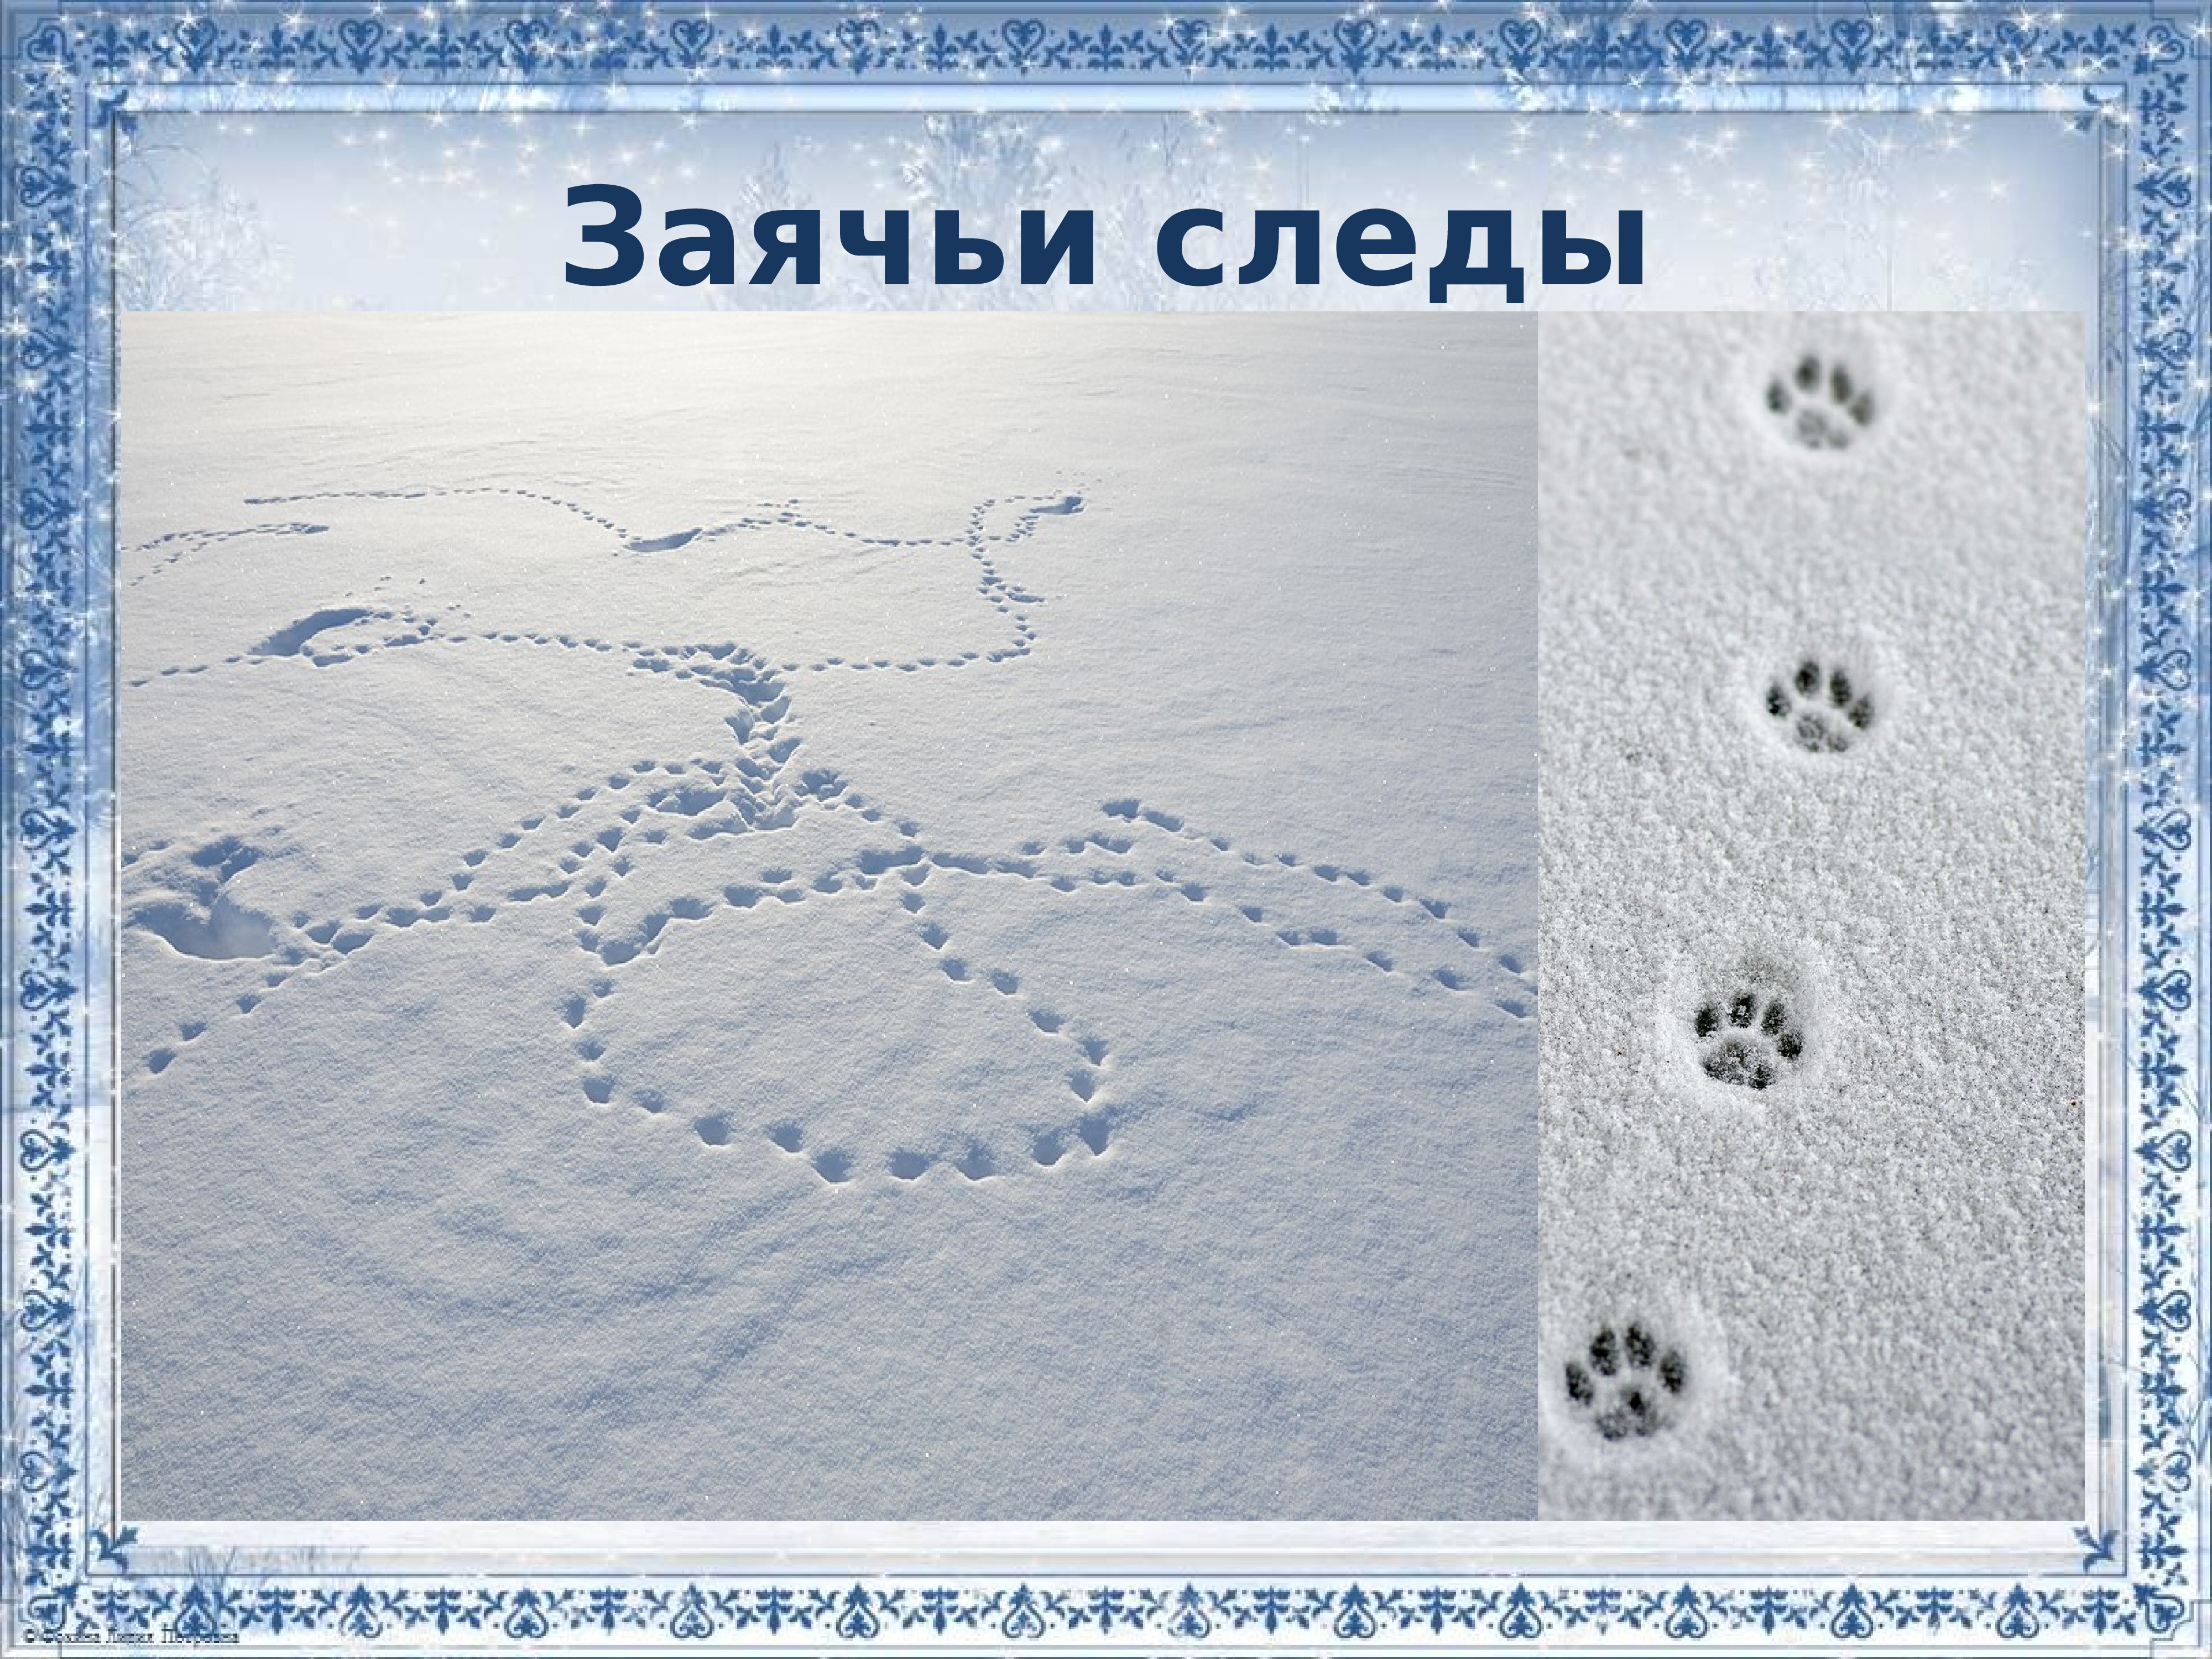 След зайца на снегу 5. Картина следы зайца. Следы зайца на снегу. Заячьи следы на снегу для детей. Следы зайца зимой на снегу.